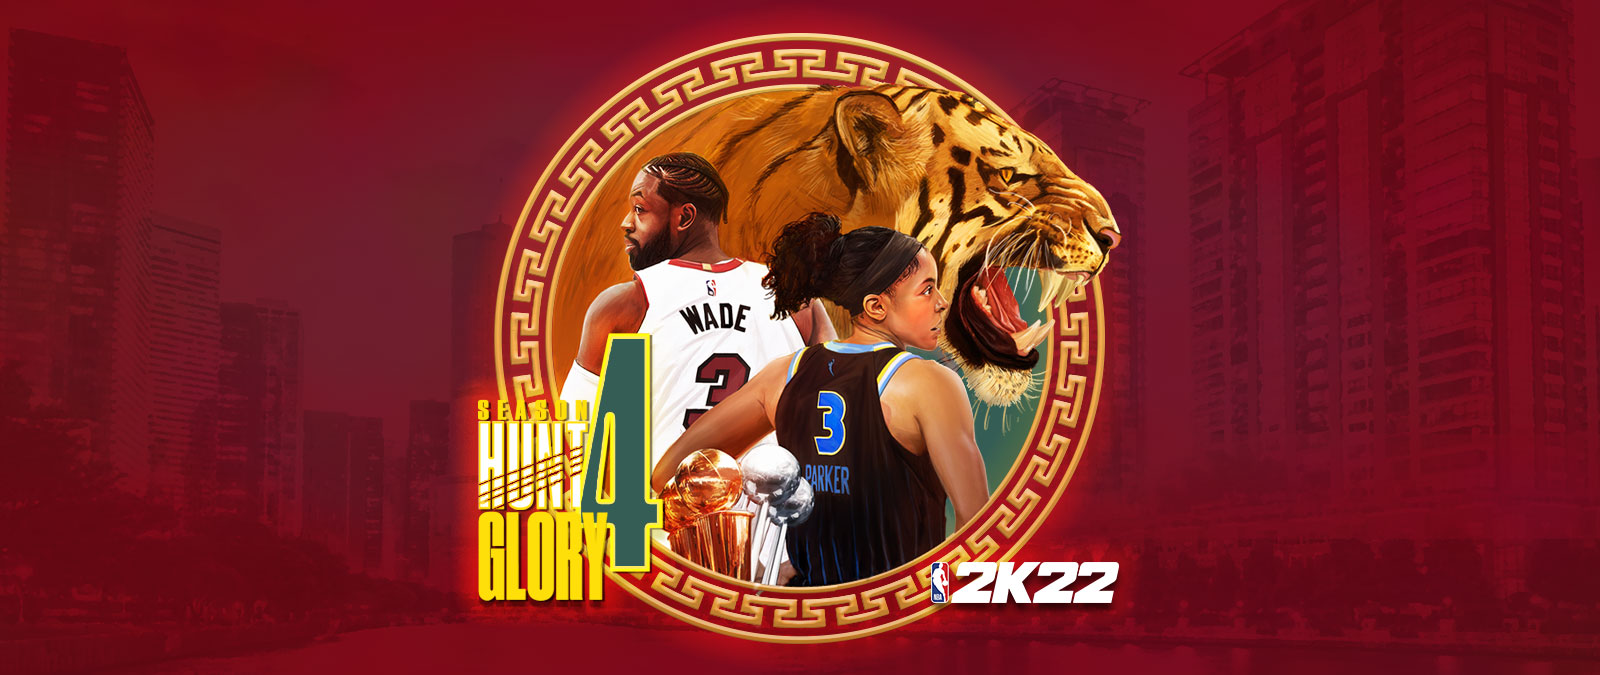 NBA 2K22, Sezon 4: Hunt 4 Glory, okrągły element graficzny nałożony na czerwono zabarwiony krajobraz miasta przedstawia warczącego tygrysa oraz odwróconych plecami Dwayne'a Wade'a i Candace Parker. 